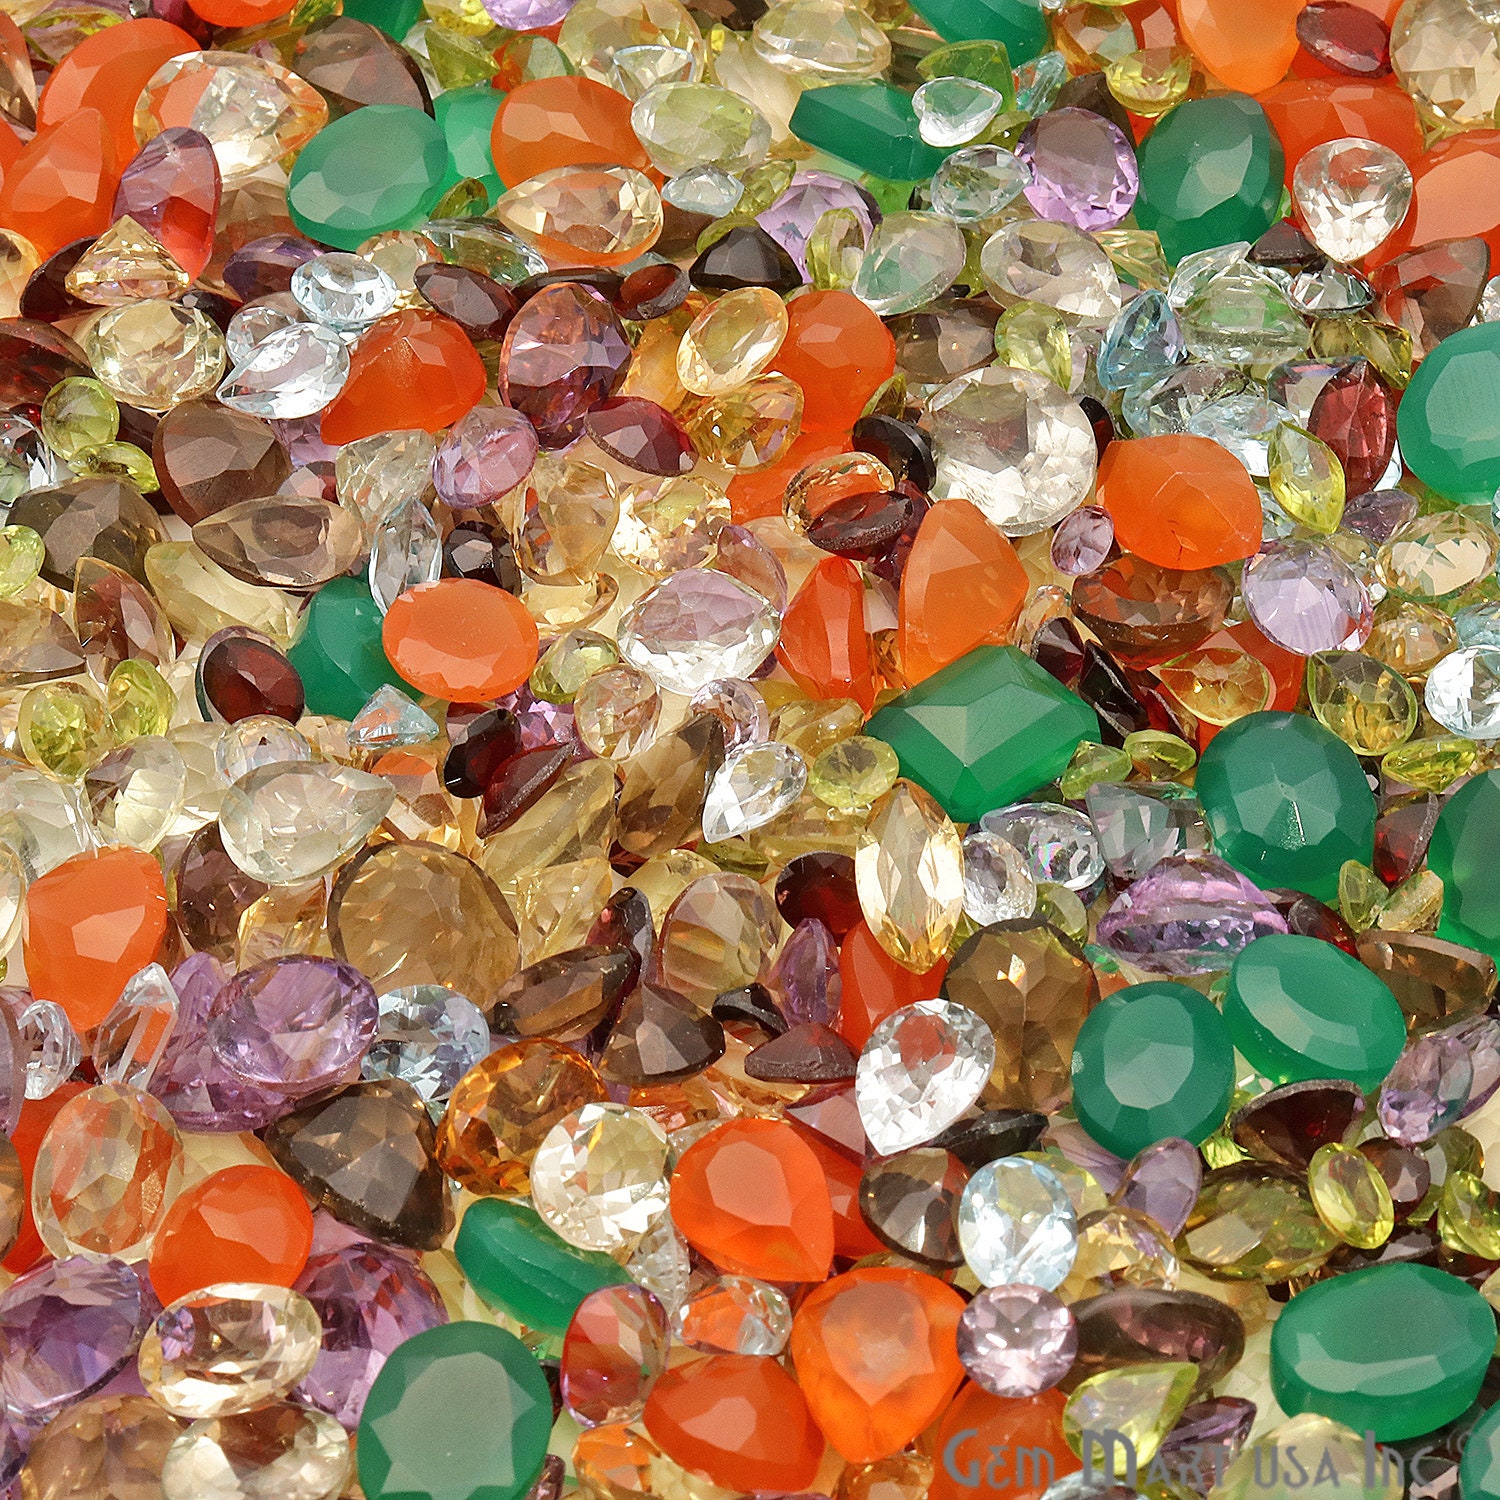  GemMartUSA Loose Gemstone (MX 60001) 200 Carats Mixed Gemstone  Lot Natural Loose Gems Wholesale Mixcolored Stones Mix Shaped Loose  Gemstones. : Clothing, Shoes & Jewelry